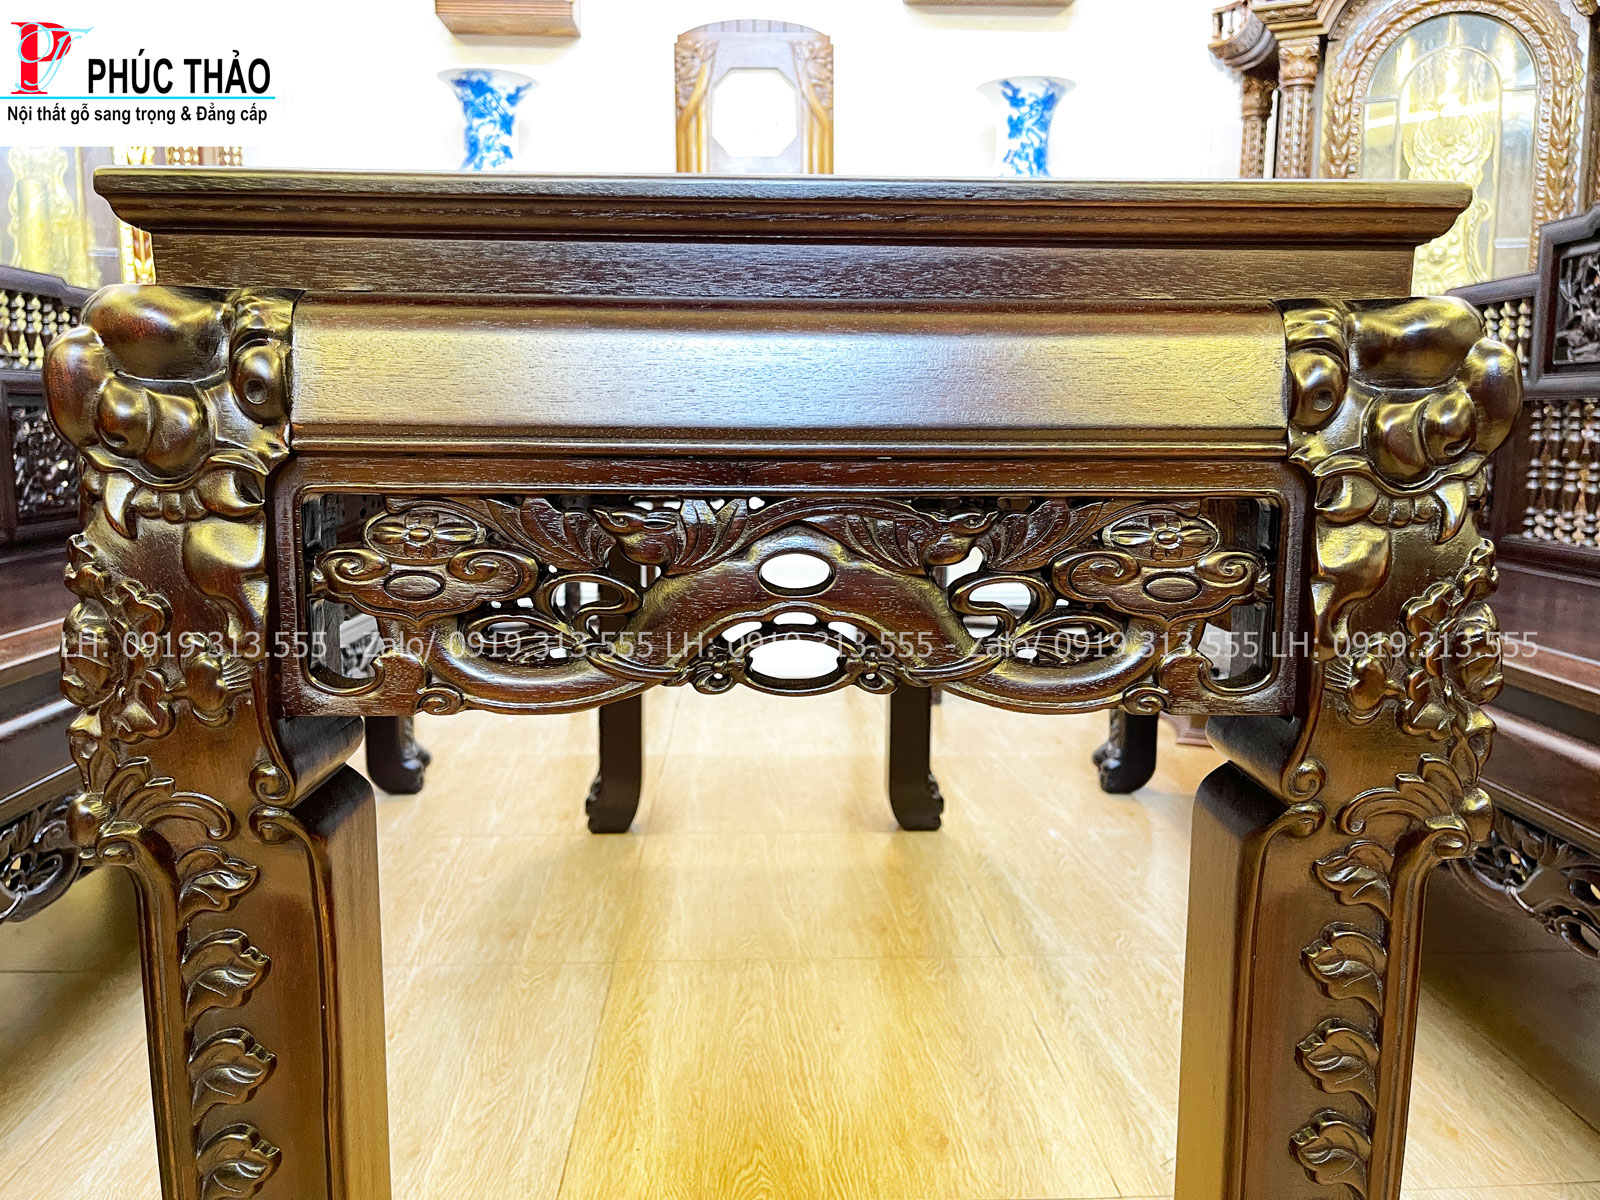 Đồ gỗ Phúc Thảo chuyên cung cấp bàn ghế trường kỷ song tiện ngũ sơn